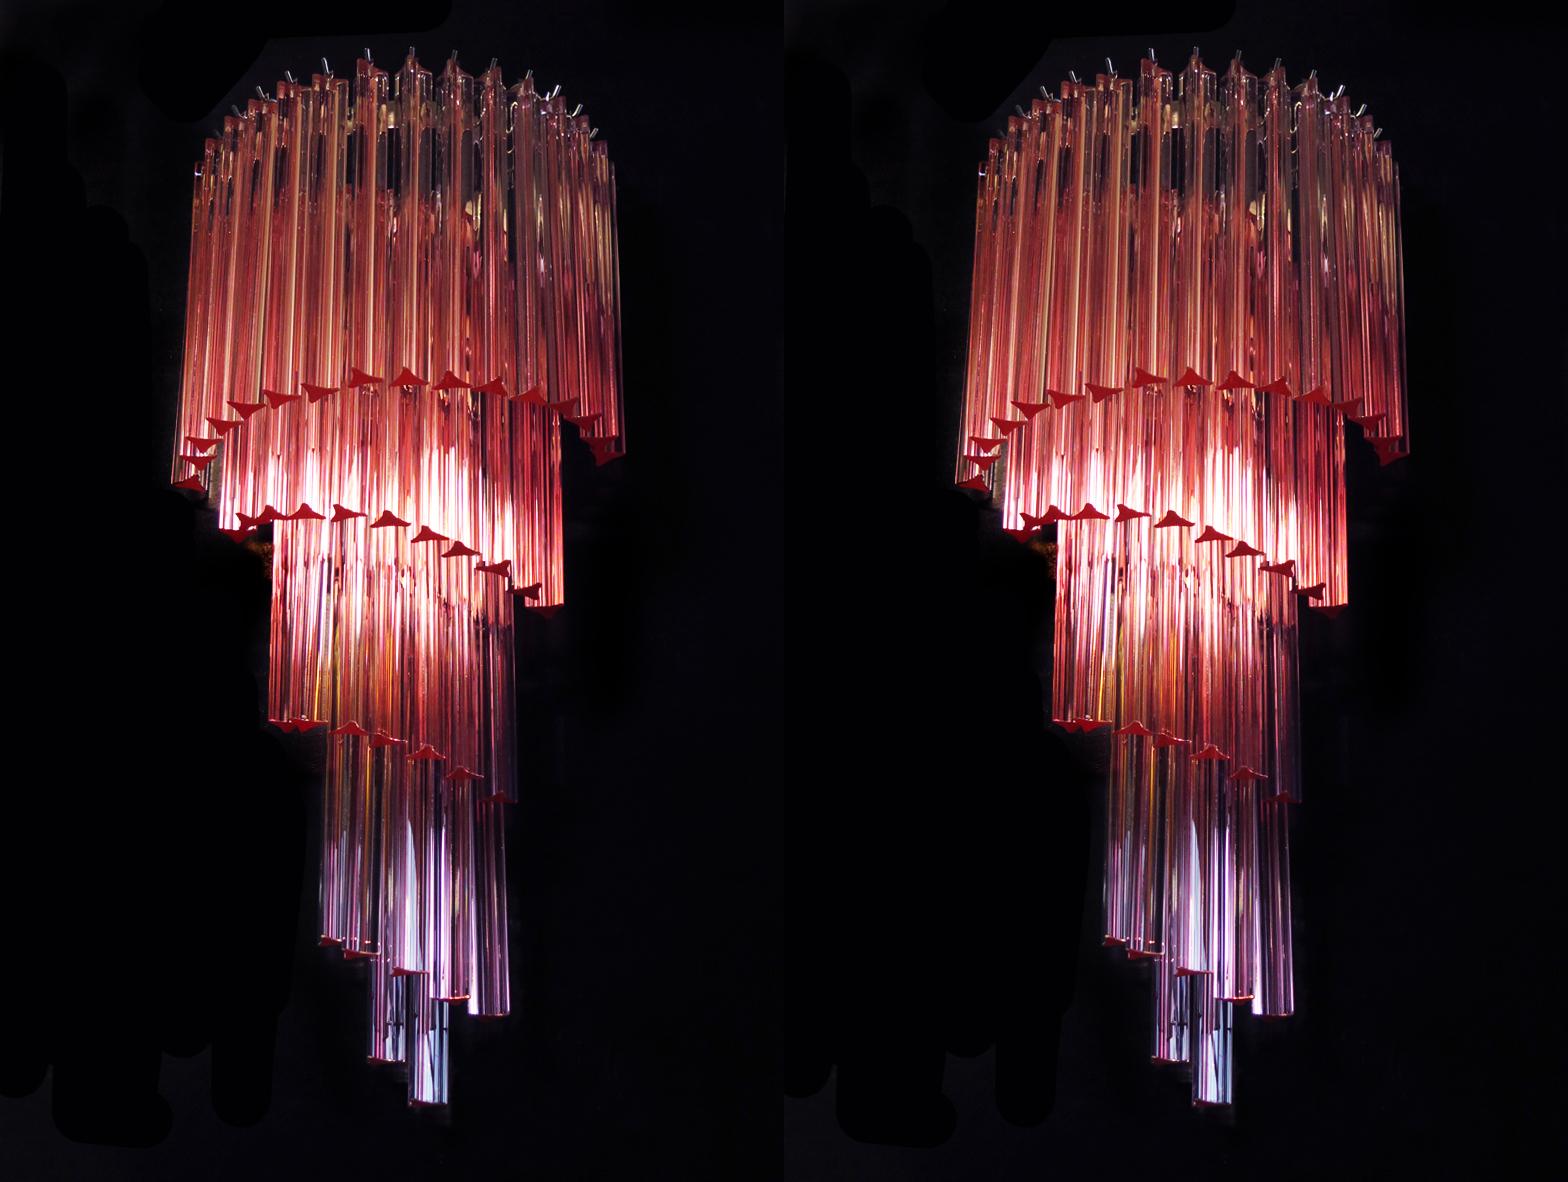 Énorme et fantastique paire d'appliques murales vintage de Murano faite de 41 prismes en cristal de Murano (triedri) pour chaque applique dans un cadre en métal chromé. La forme de cette applique est en spirale. Les lunettes sont roses.
Période :